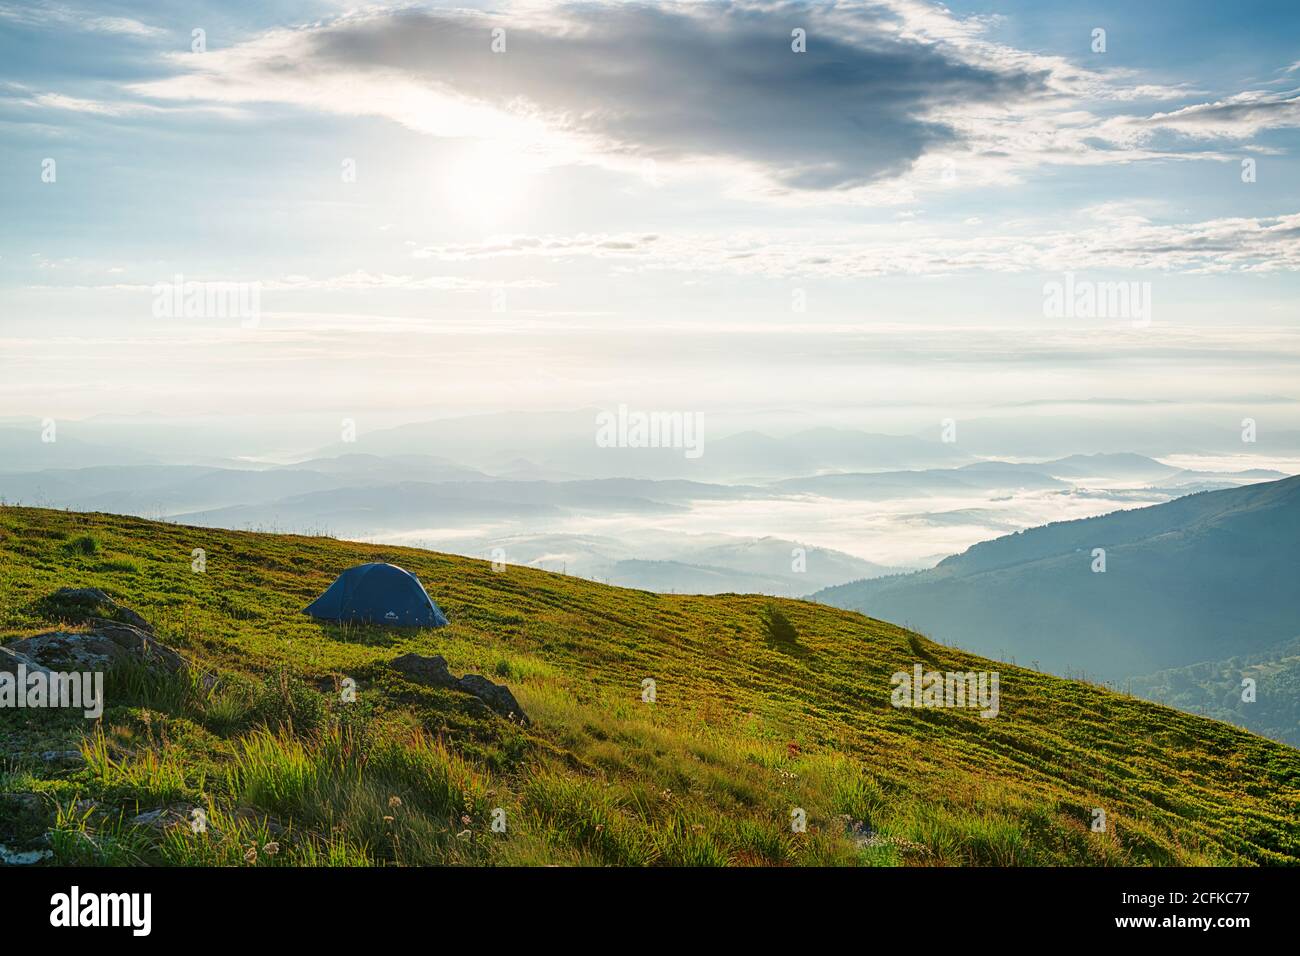 Solitaria tenda turistica alta in montagna con bella panoramica vista sulla valle della nebbia mattutina Foto Stock